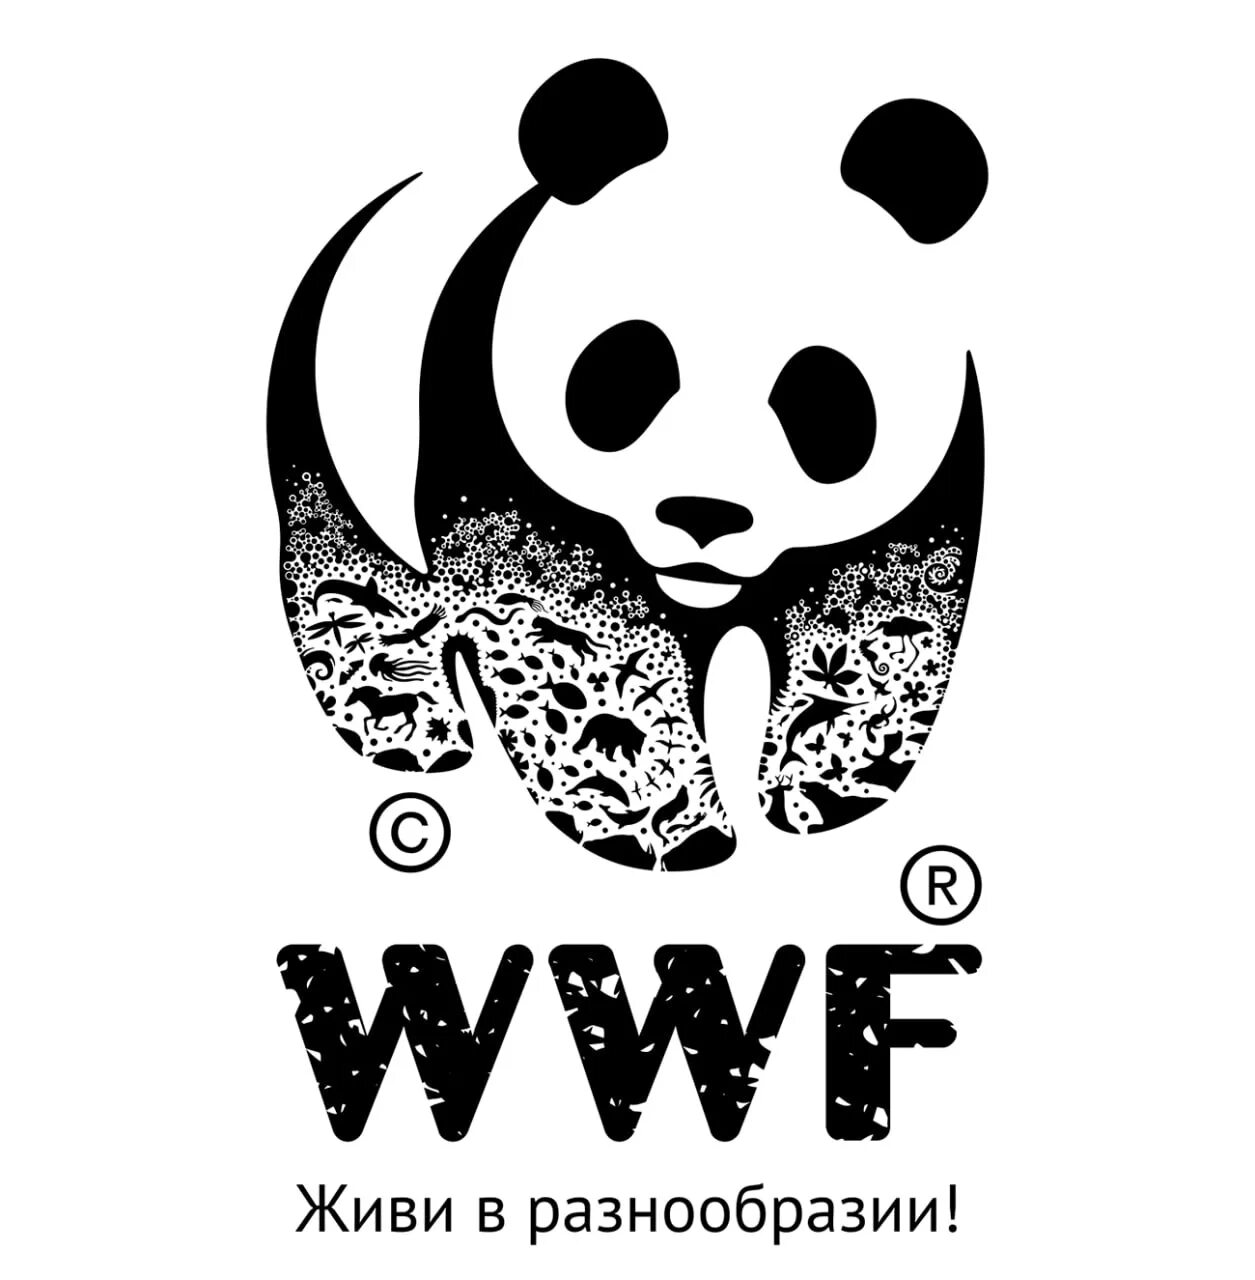 The world wildlife fund is an organization. ВВФ Всемирный фонд дикой природы. Всемирный фонд дикой природы (ВВФ) эмблема. Фонд защиты дикой природы логотип. Панда Всемирная организация.